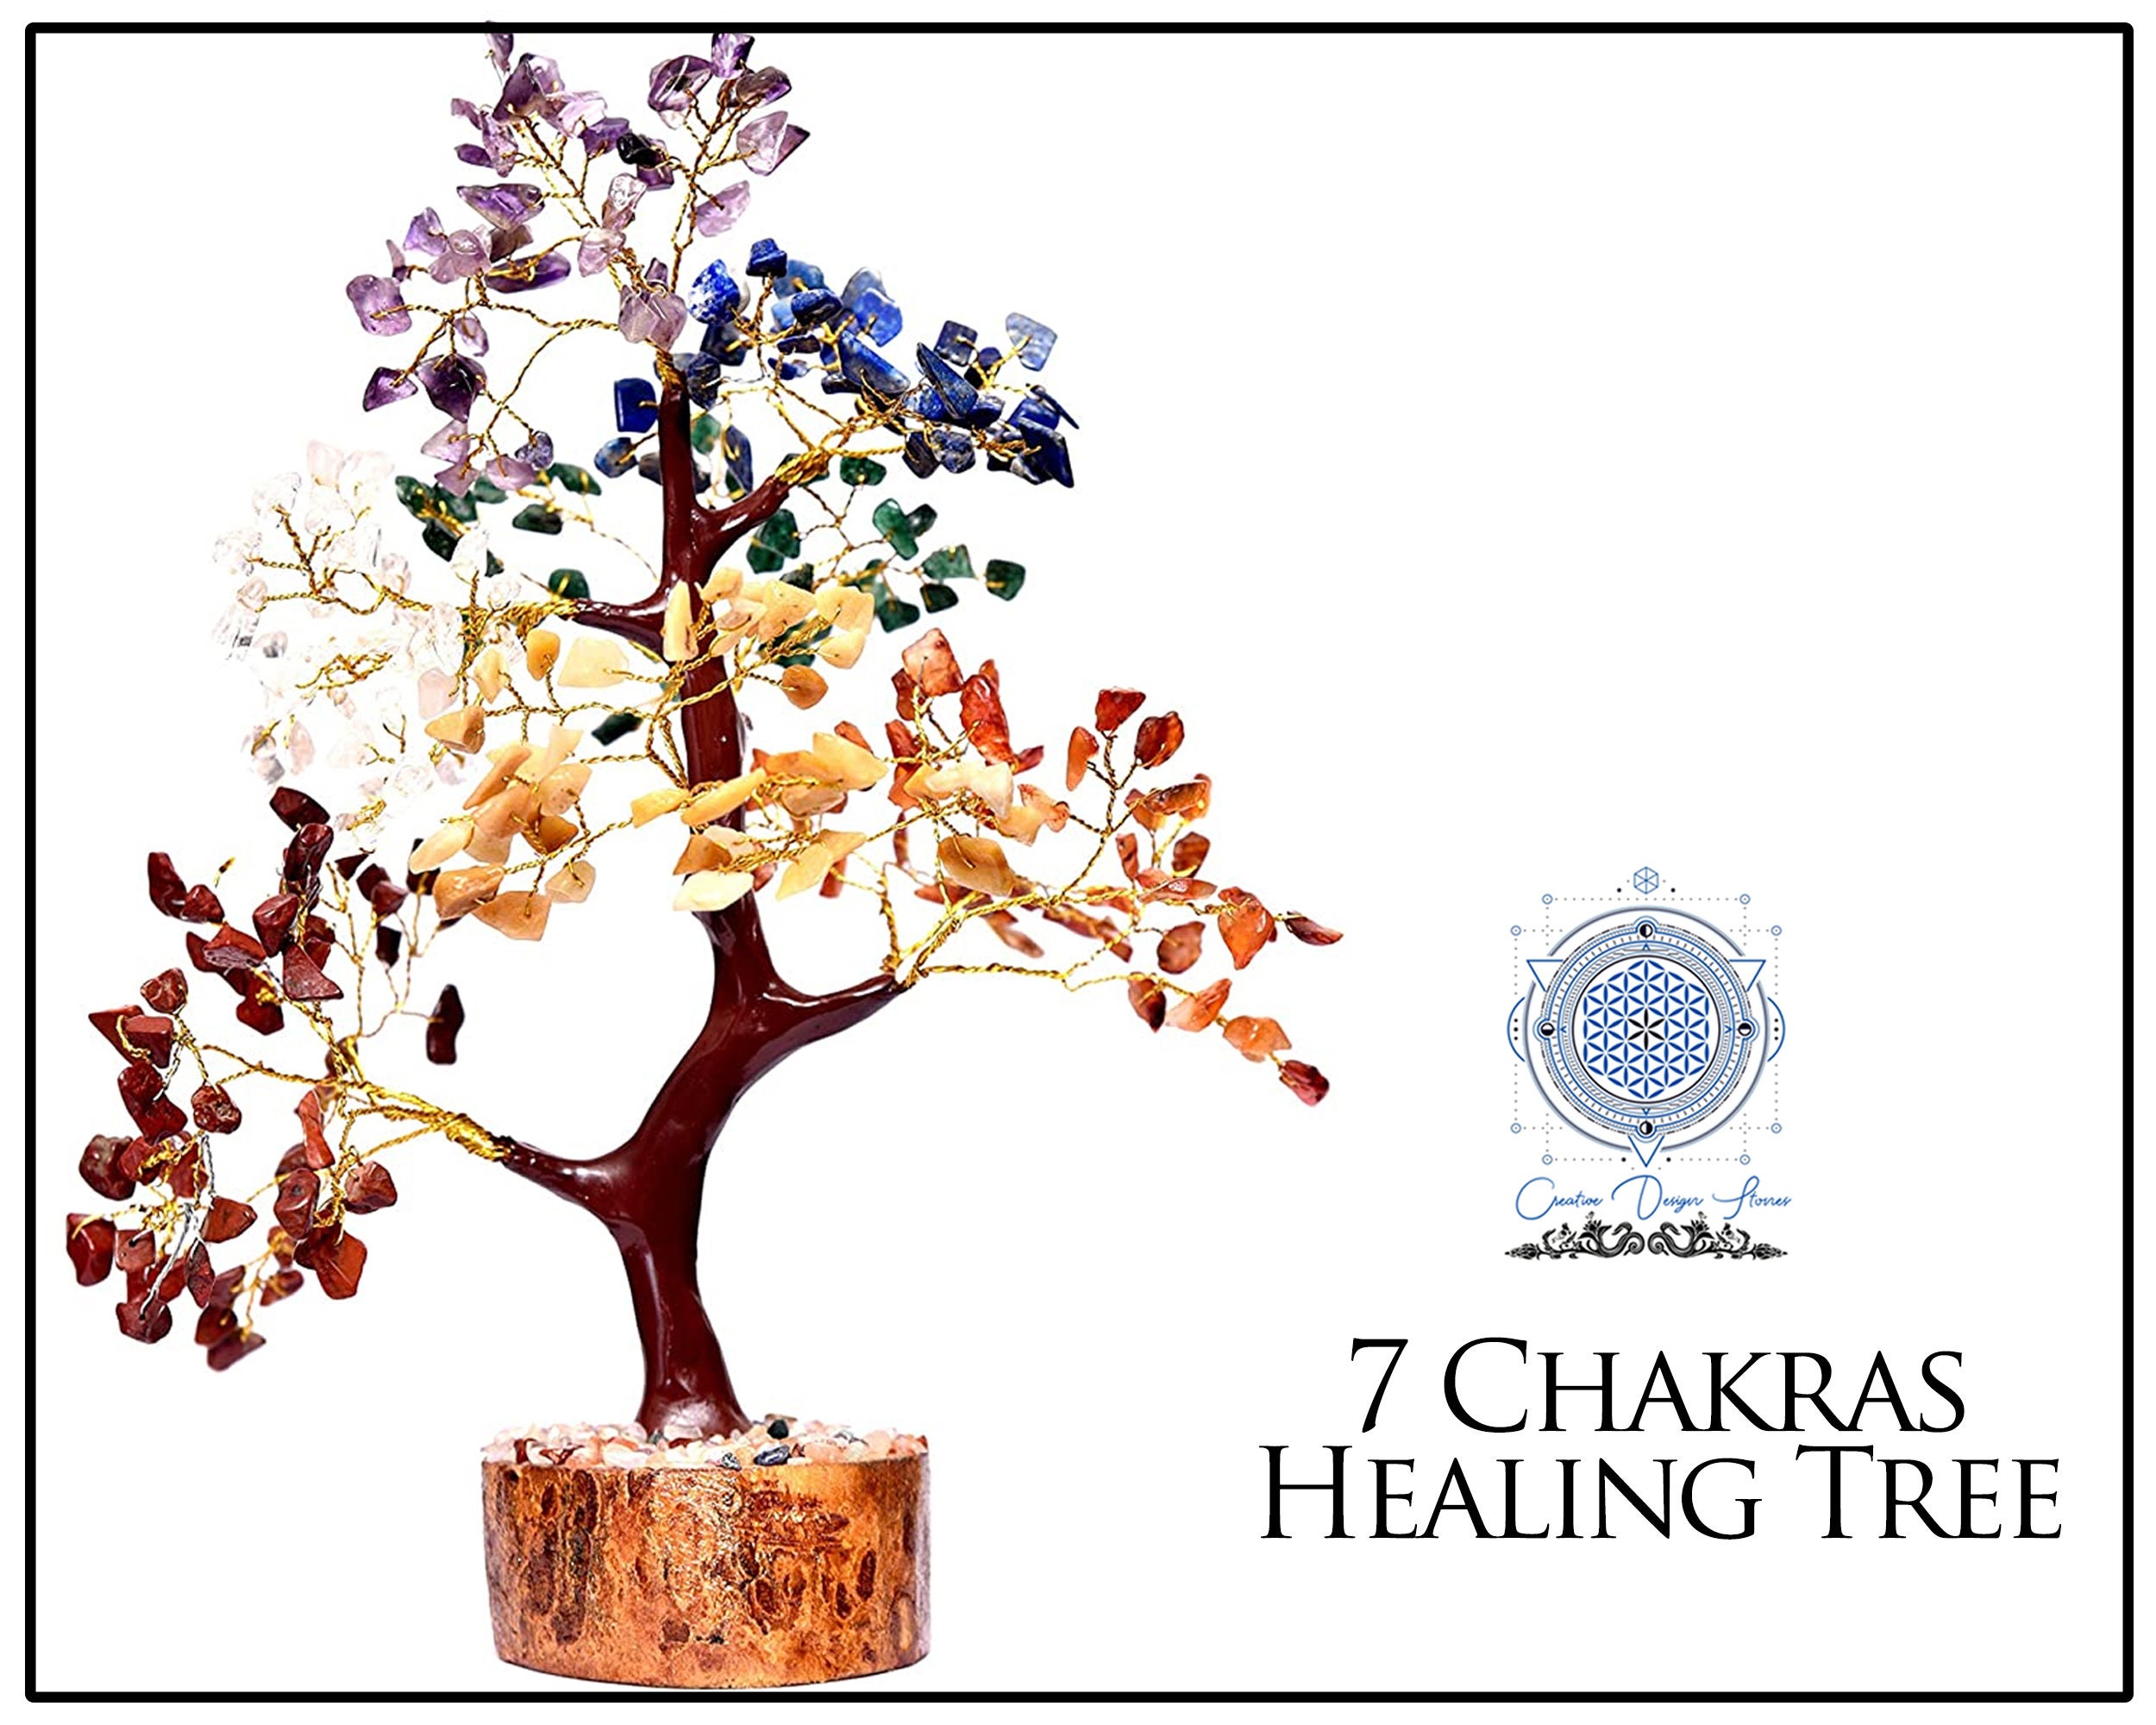 7 Chakra Meditation Reiki Tree Healing Tree Seven Chakra Tree | Etsy